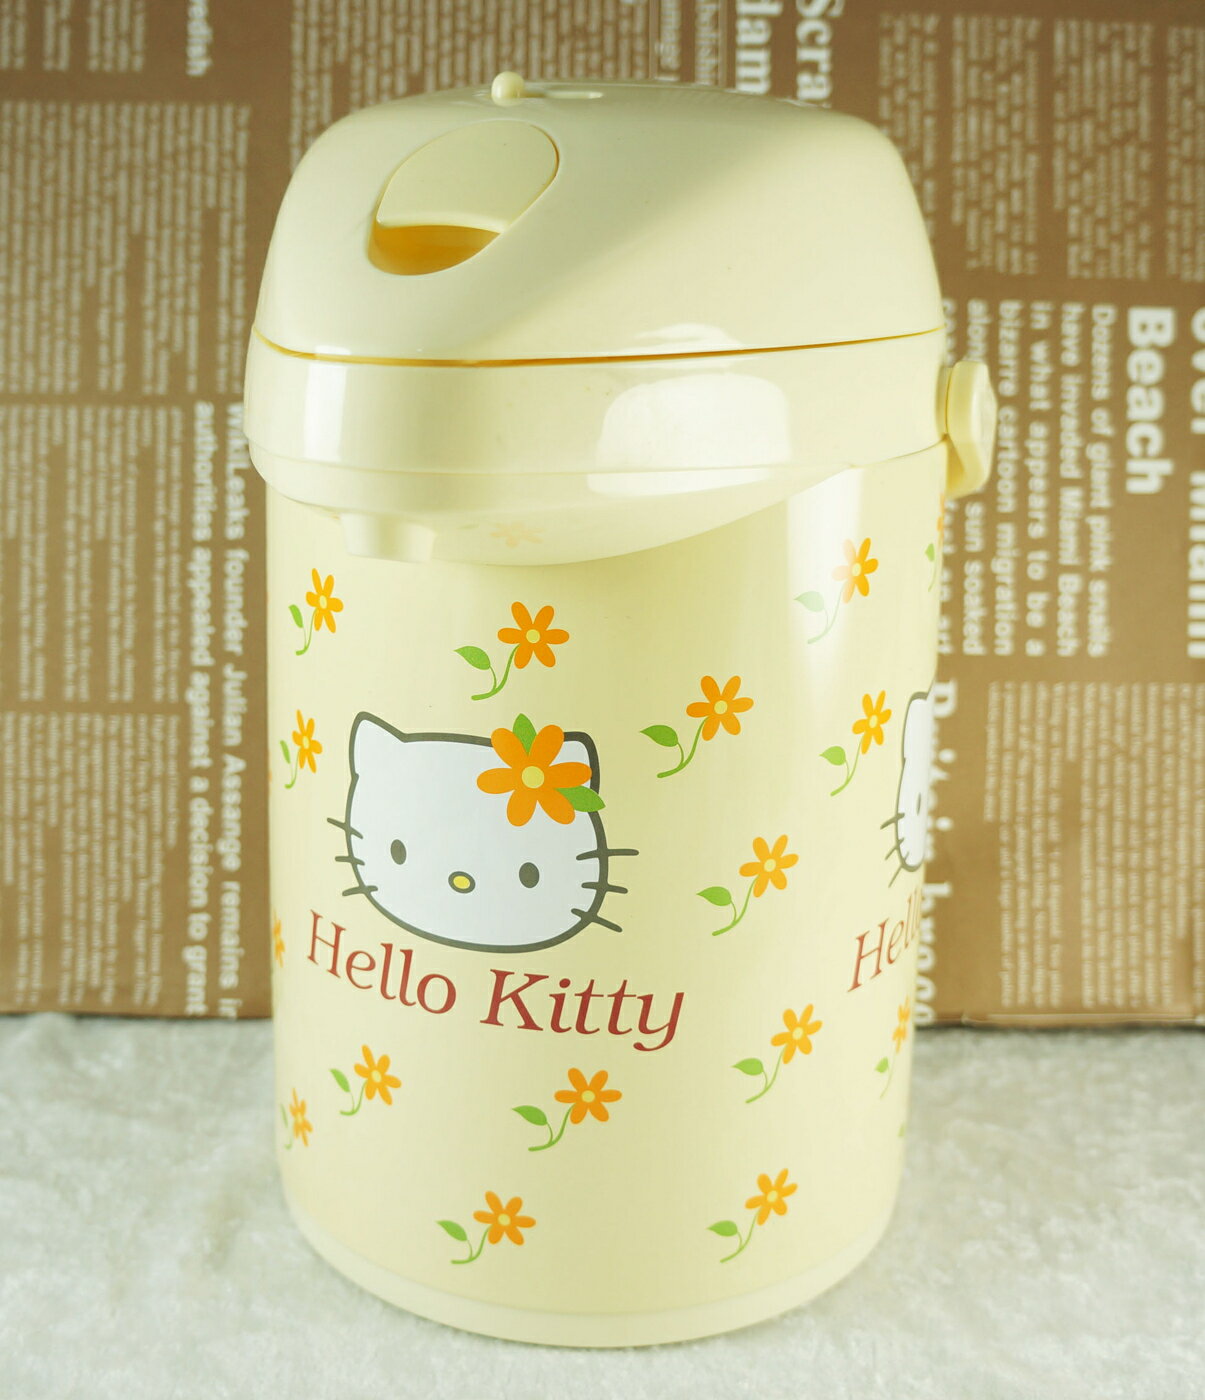 【震撼精品百貨】Hello Kitty 凱蒂貓 熱水瓶2.2L-MP-G220【共1款】 震撼日式精品百貨